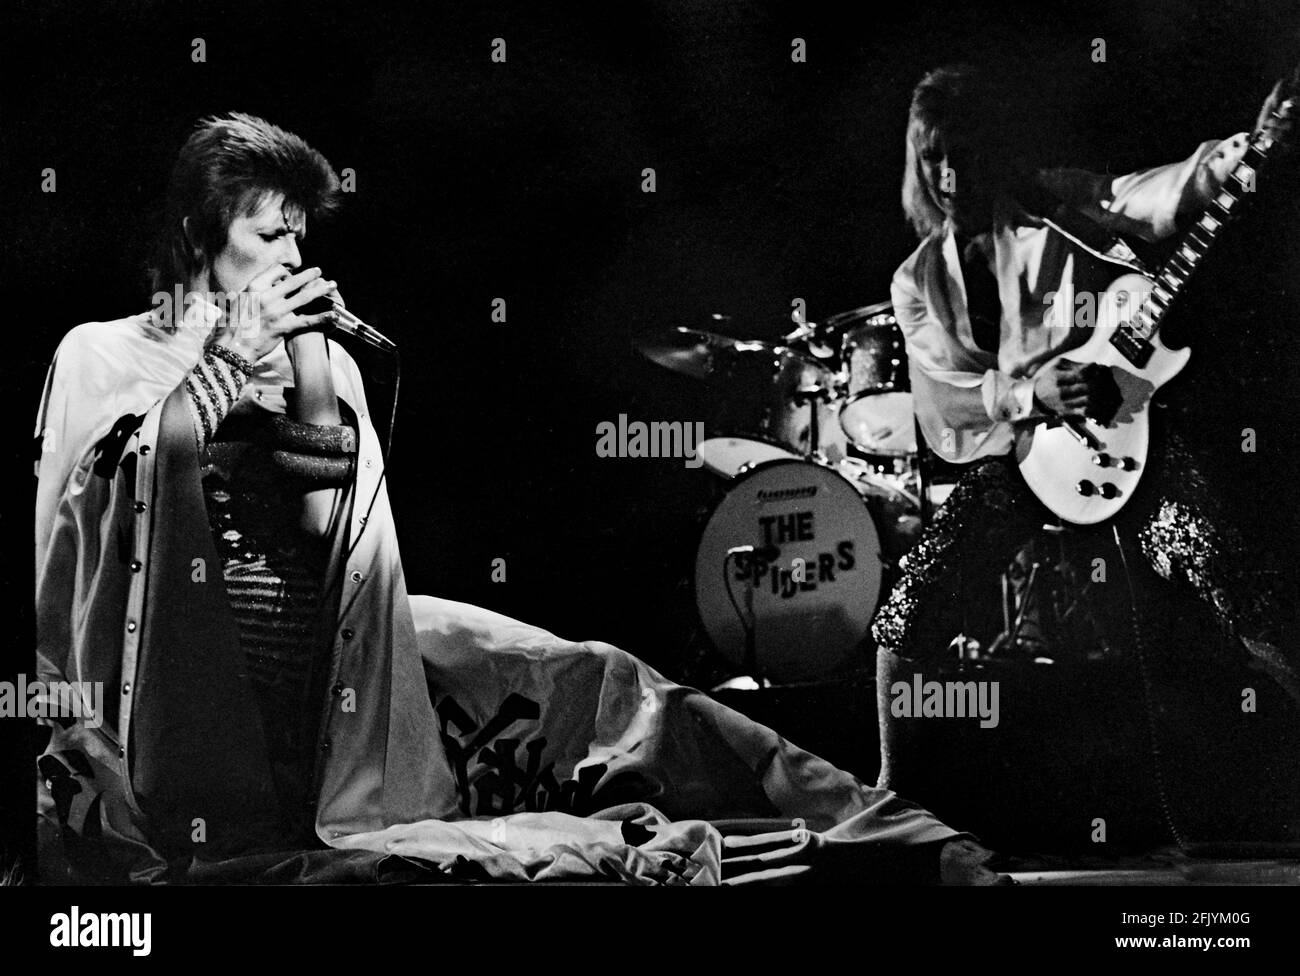 LONDRES : David Bowie se produit en direct sur scène au Earls court Arena le 12 1973 mai lors de la visite Ziggy Stardust (photo de Gijsbert Hanekroot) Banque D'Images